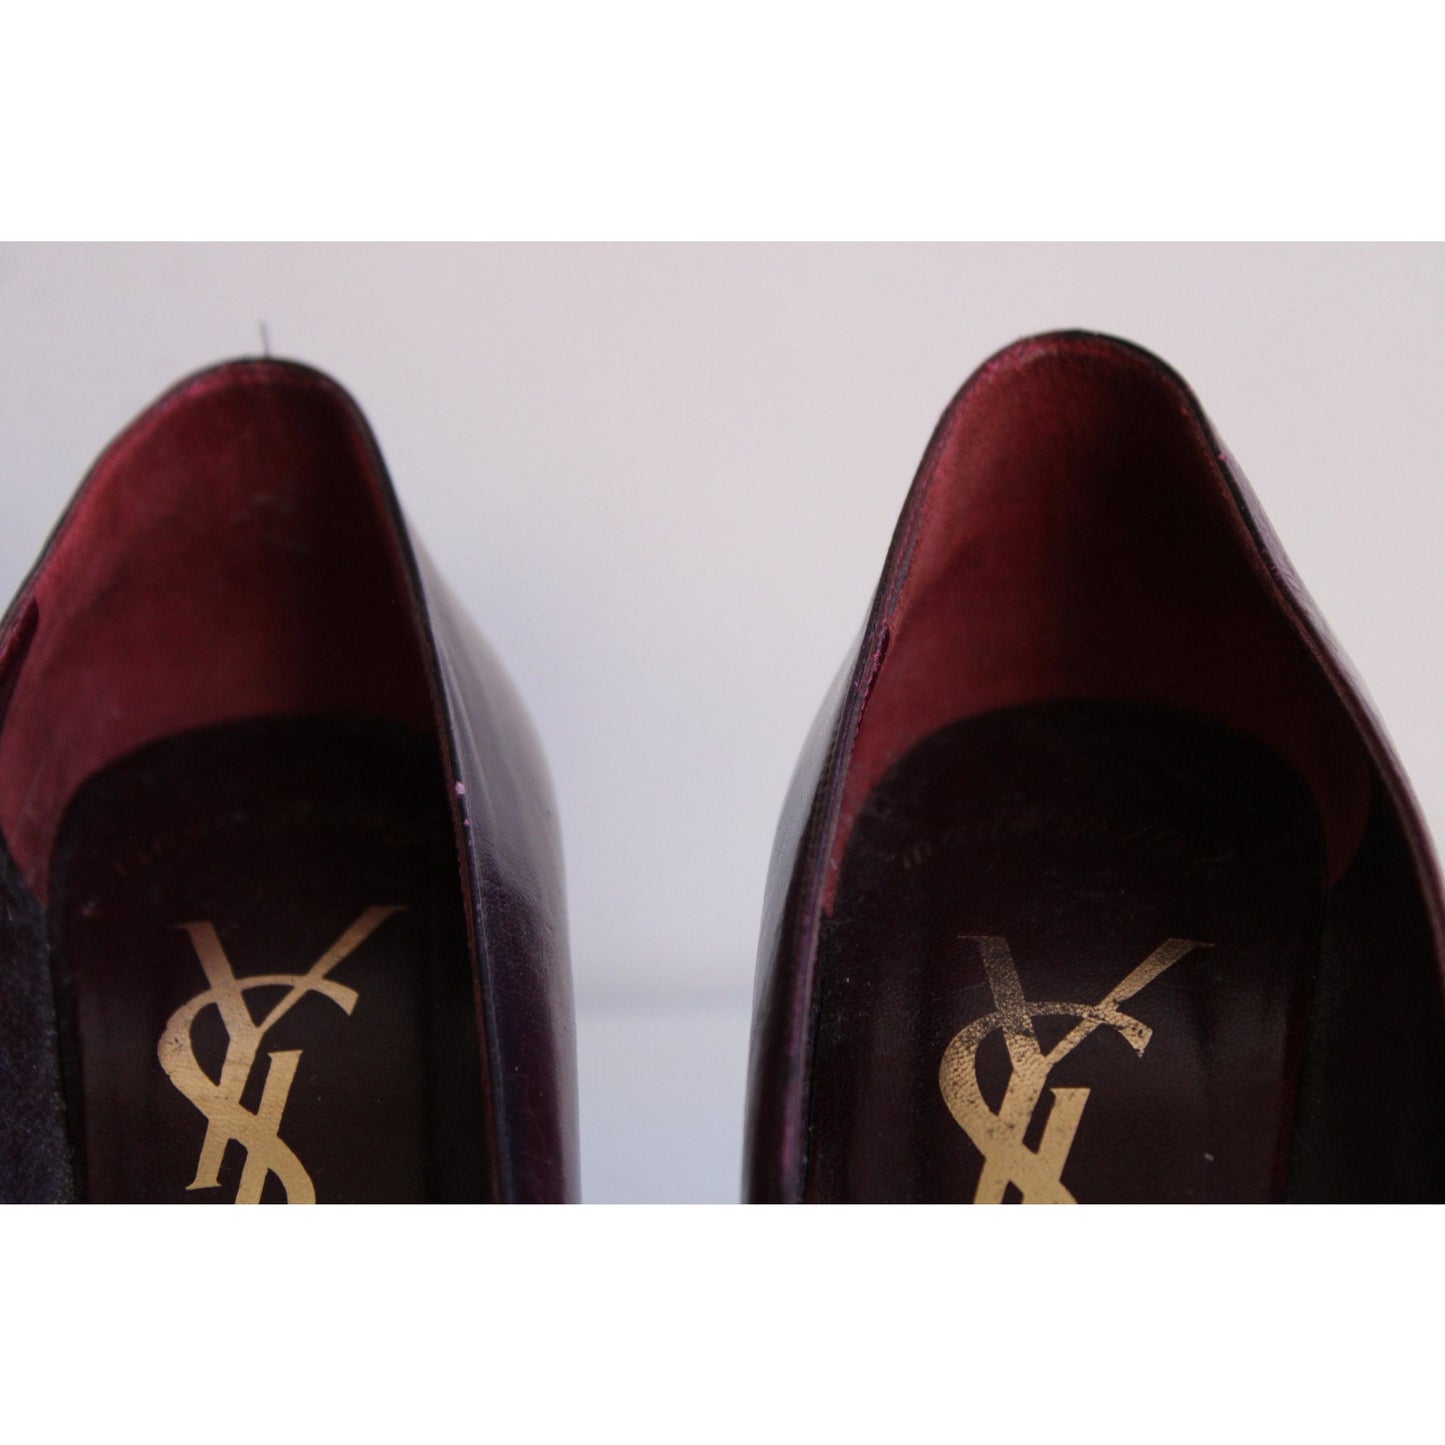 Vintage Yves Saint Laurent Shoes Size 7